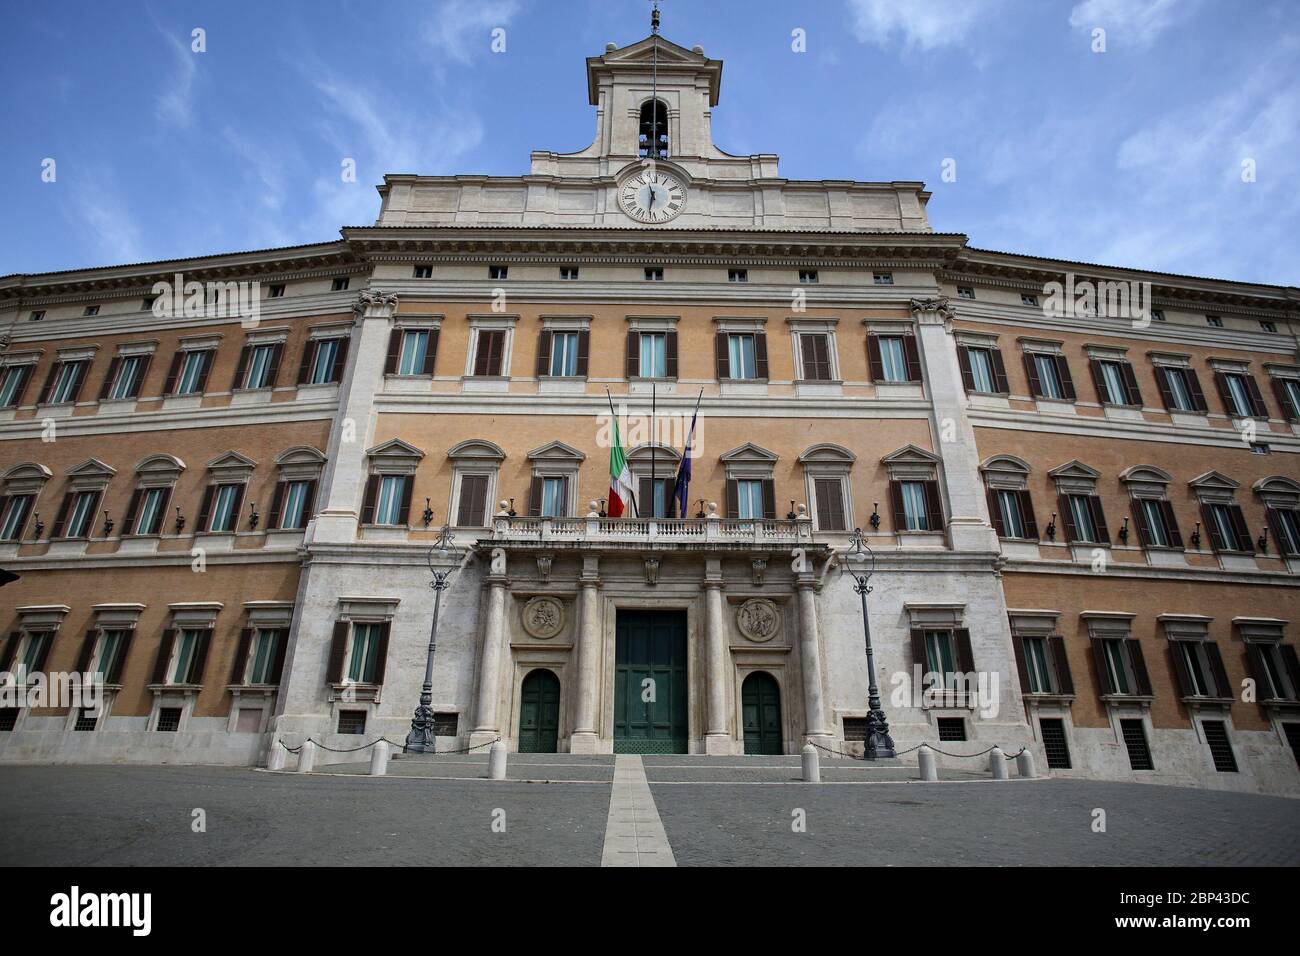 Roma, Italia, 17 maggio 2020: Il Parlamento italiano deserto a Piazza Montecitorio a Roma, nell'ultimo giorno di lockdown dopo quasi 3 mesi di quarantena per causa della pandemia Covid-19. Stock Photo